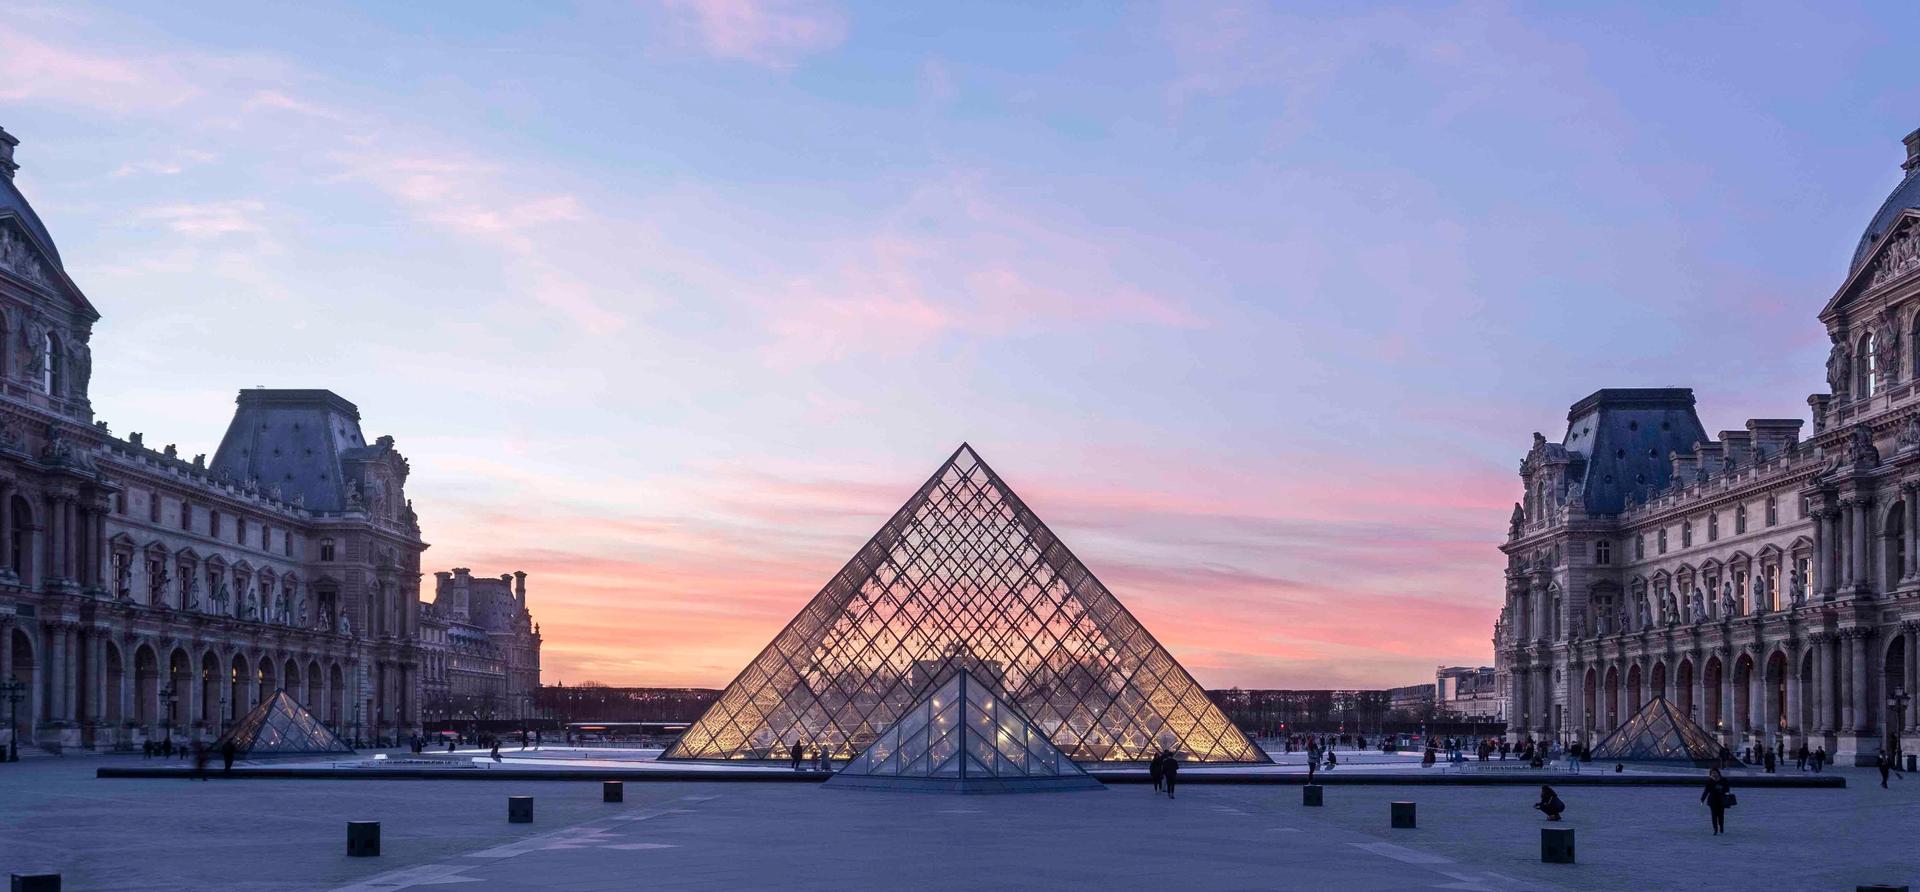 Mlbg Musee Du Louvre Vue De La Pyramide Du Louvre ©  Ieoh Ming Pei© 2019 Musée Du Louvre Nicolas Guirau (1)